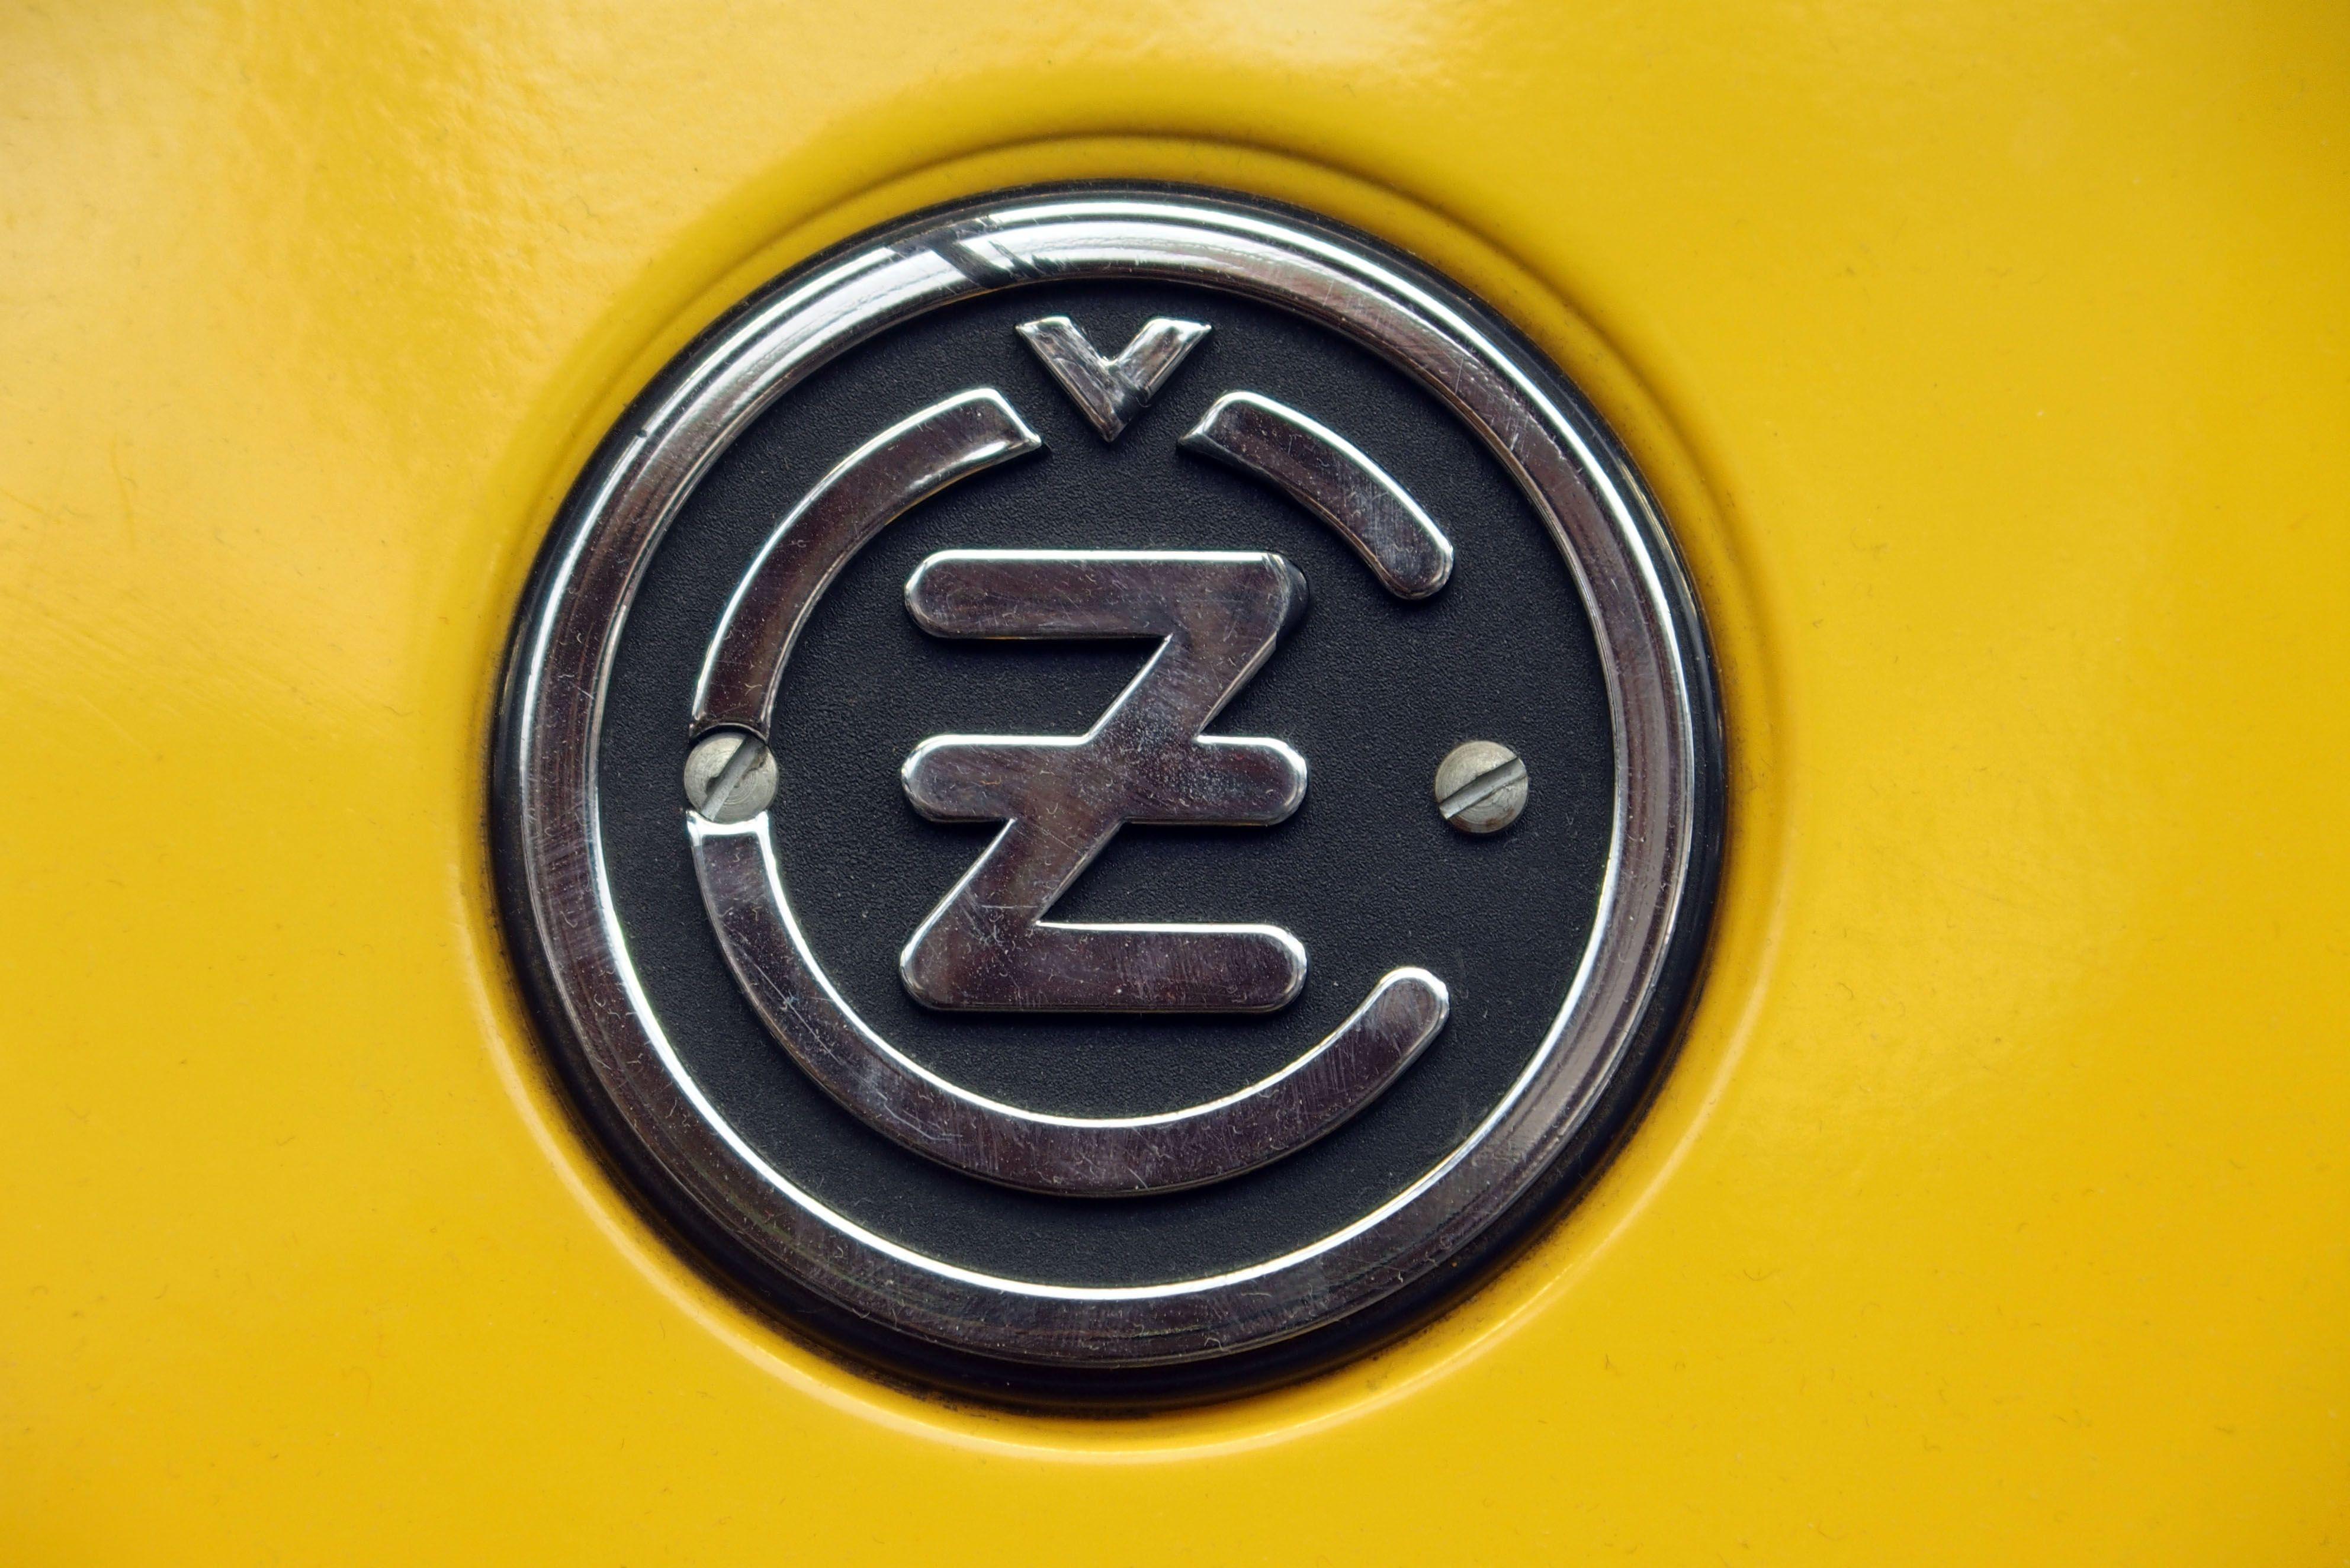 Motorcycle Tank Logo - CZ logo on motorcycle